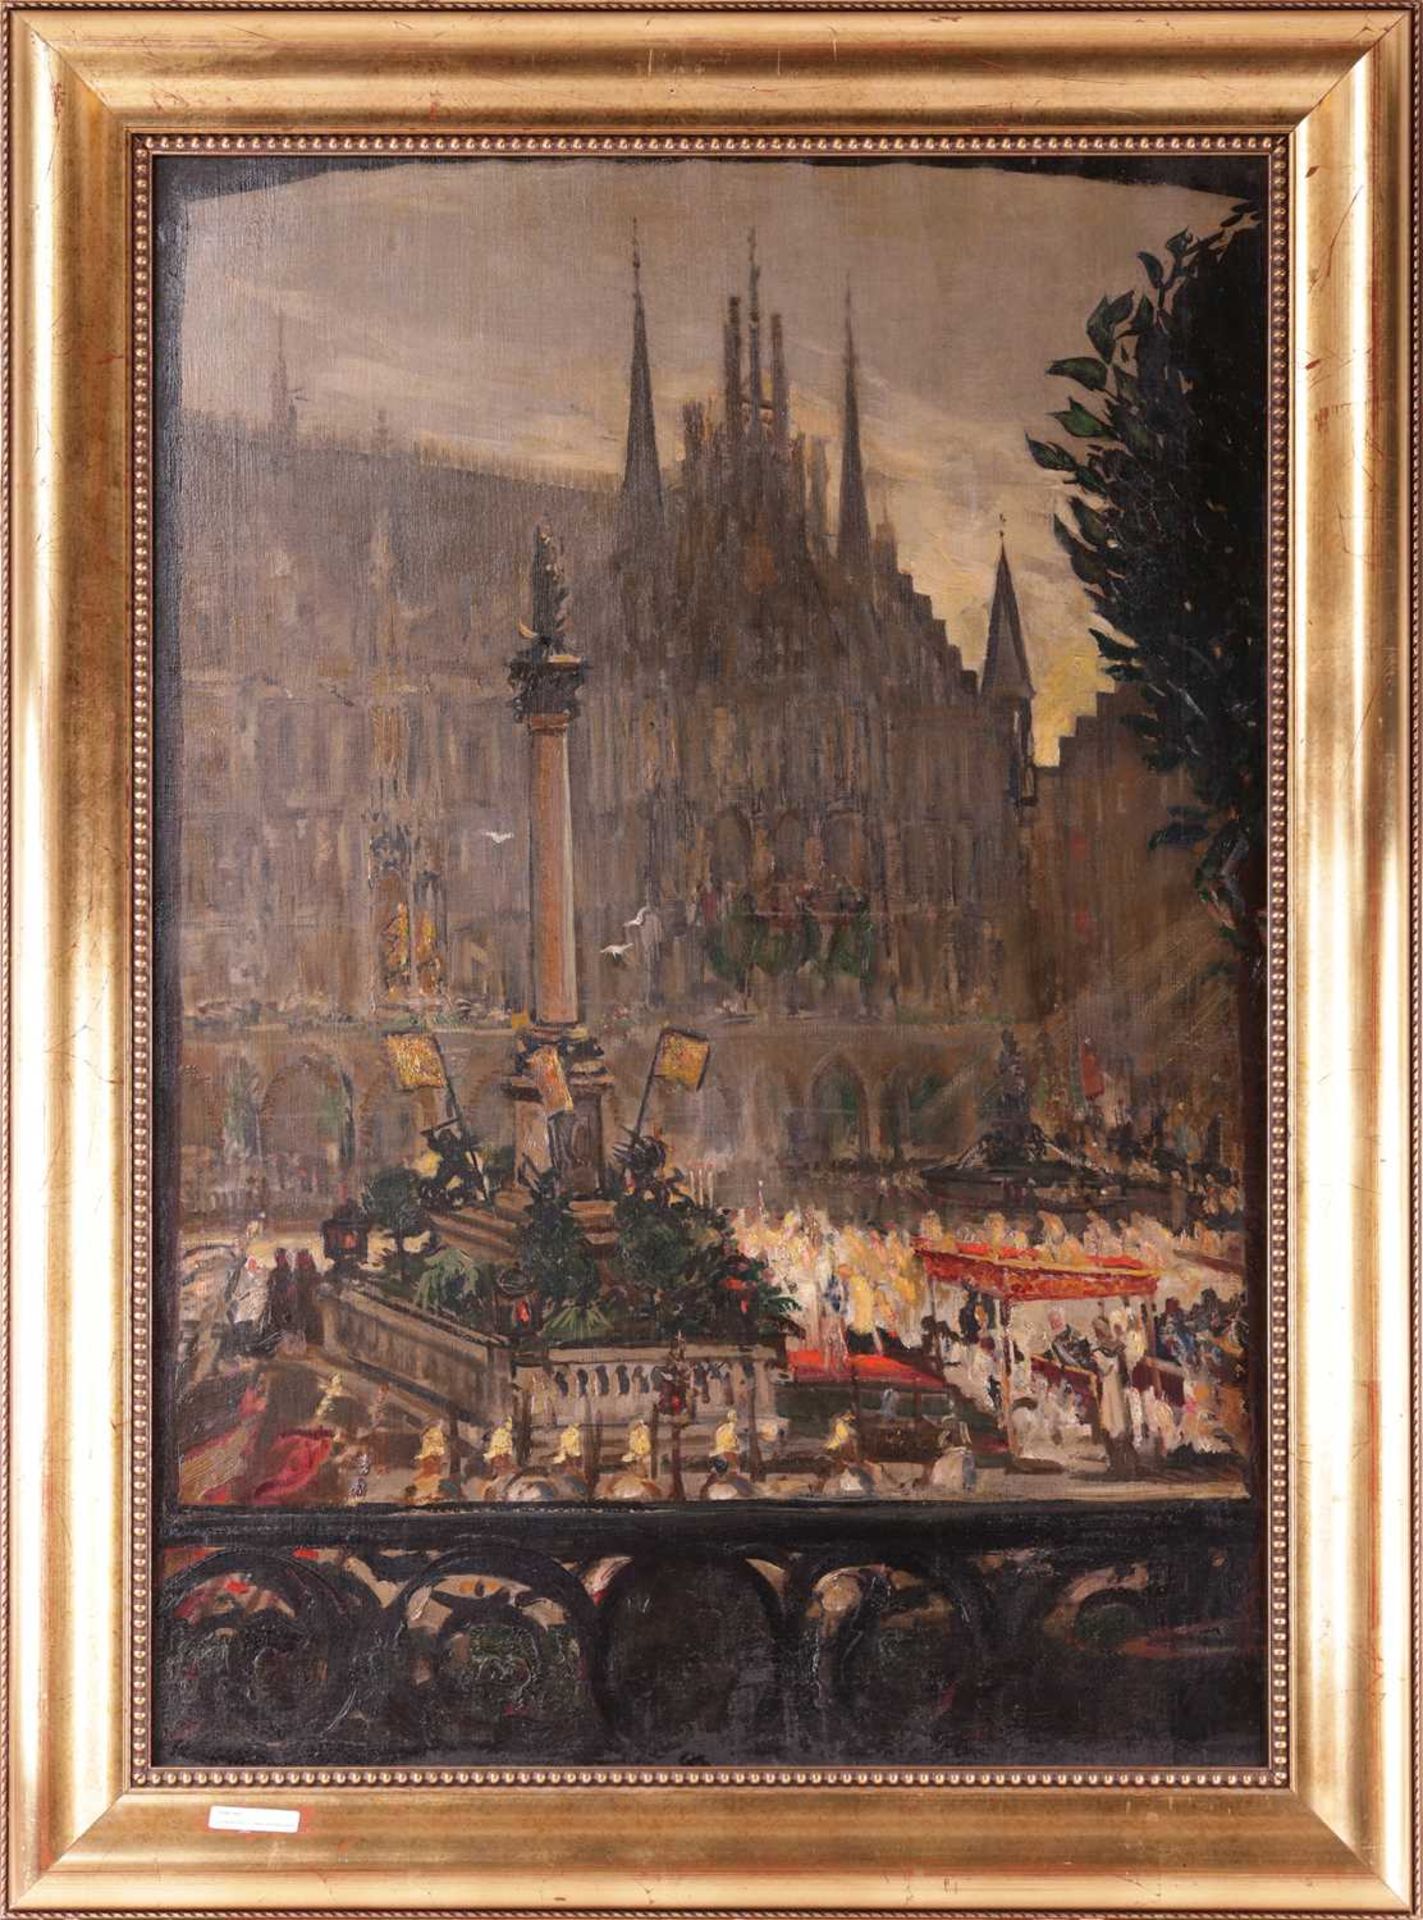 Attributed to Walter Richard Sickert (1860 - 1942), Civic Ceremony on the Marienplatz, Munich, unsig - Bild 2 aus 11